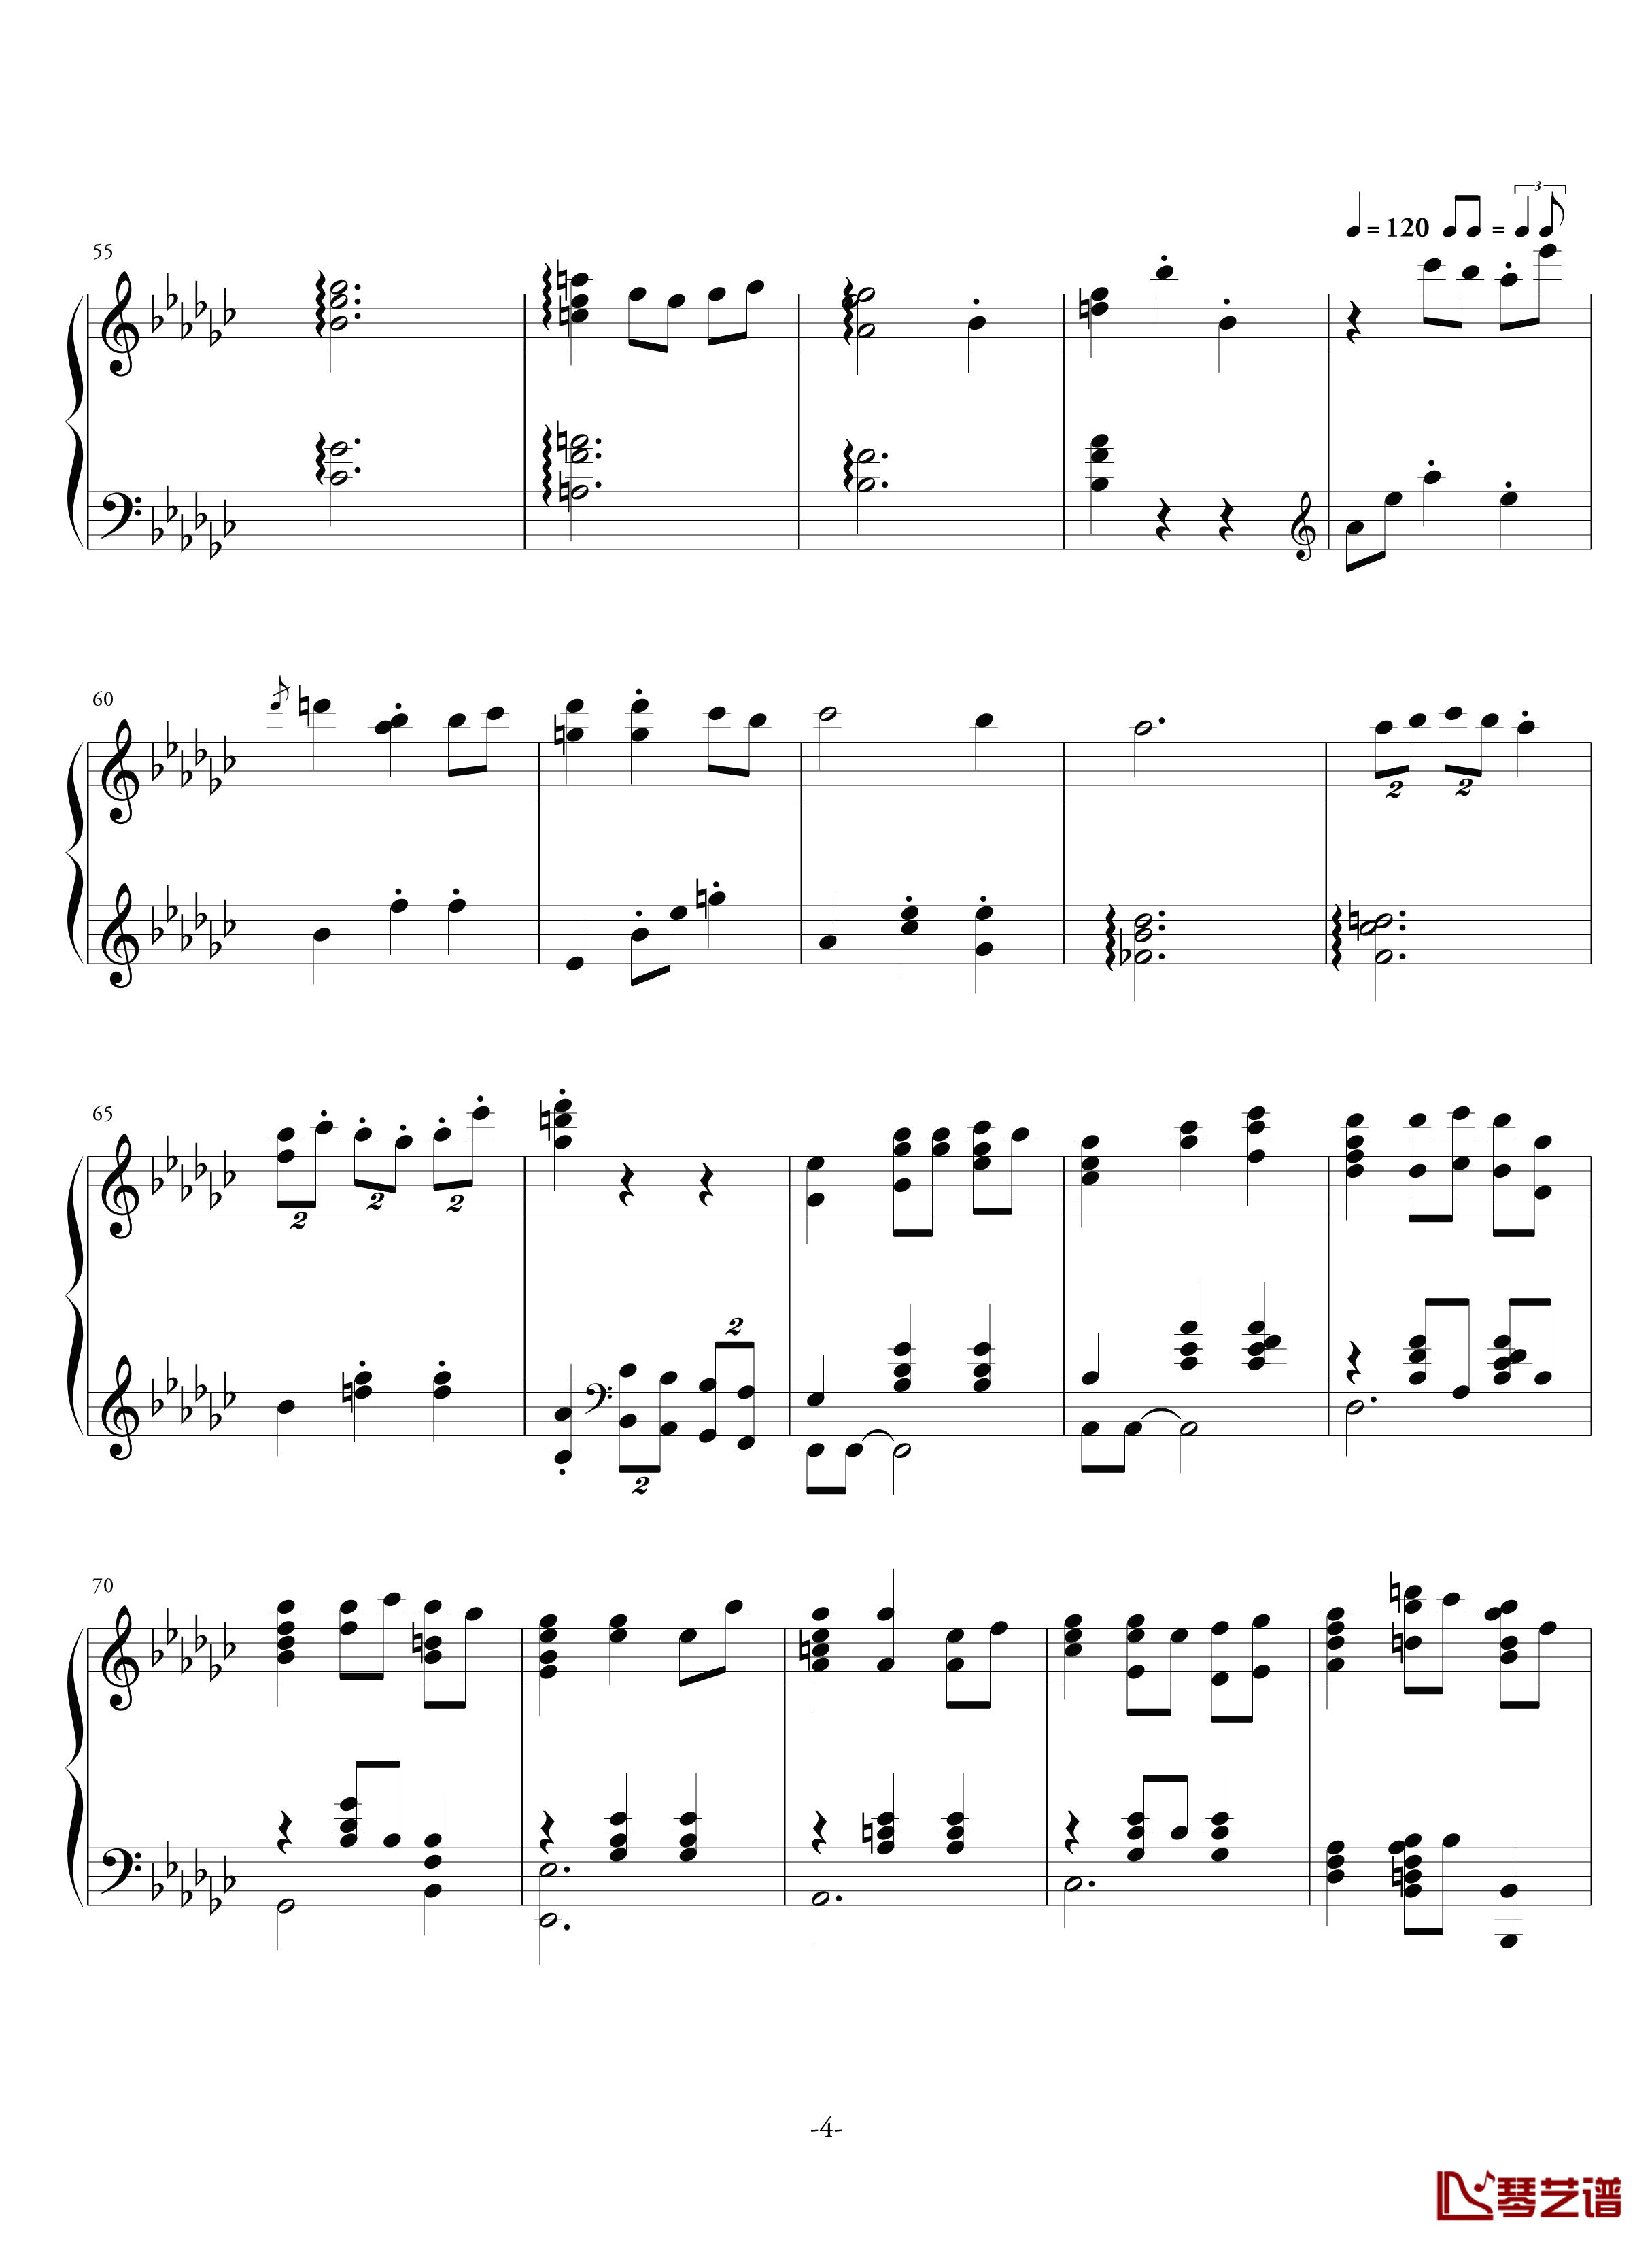 空心人偶的游乐园钢琴谱-反-aqtq314-白蔷薇组曲⒊4